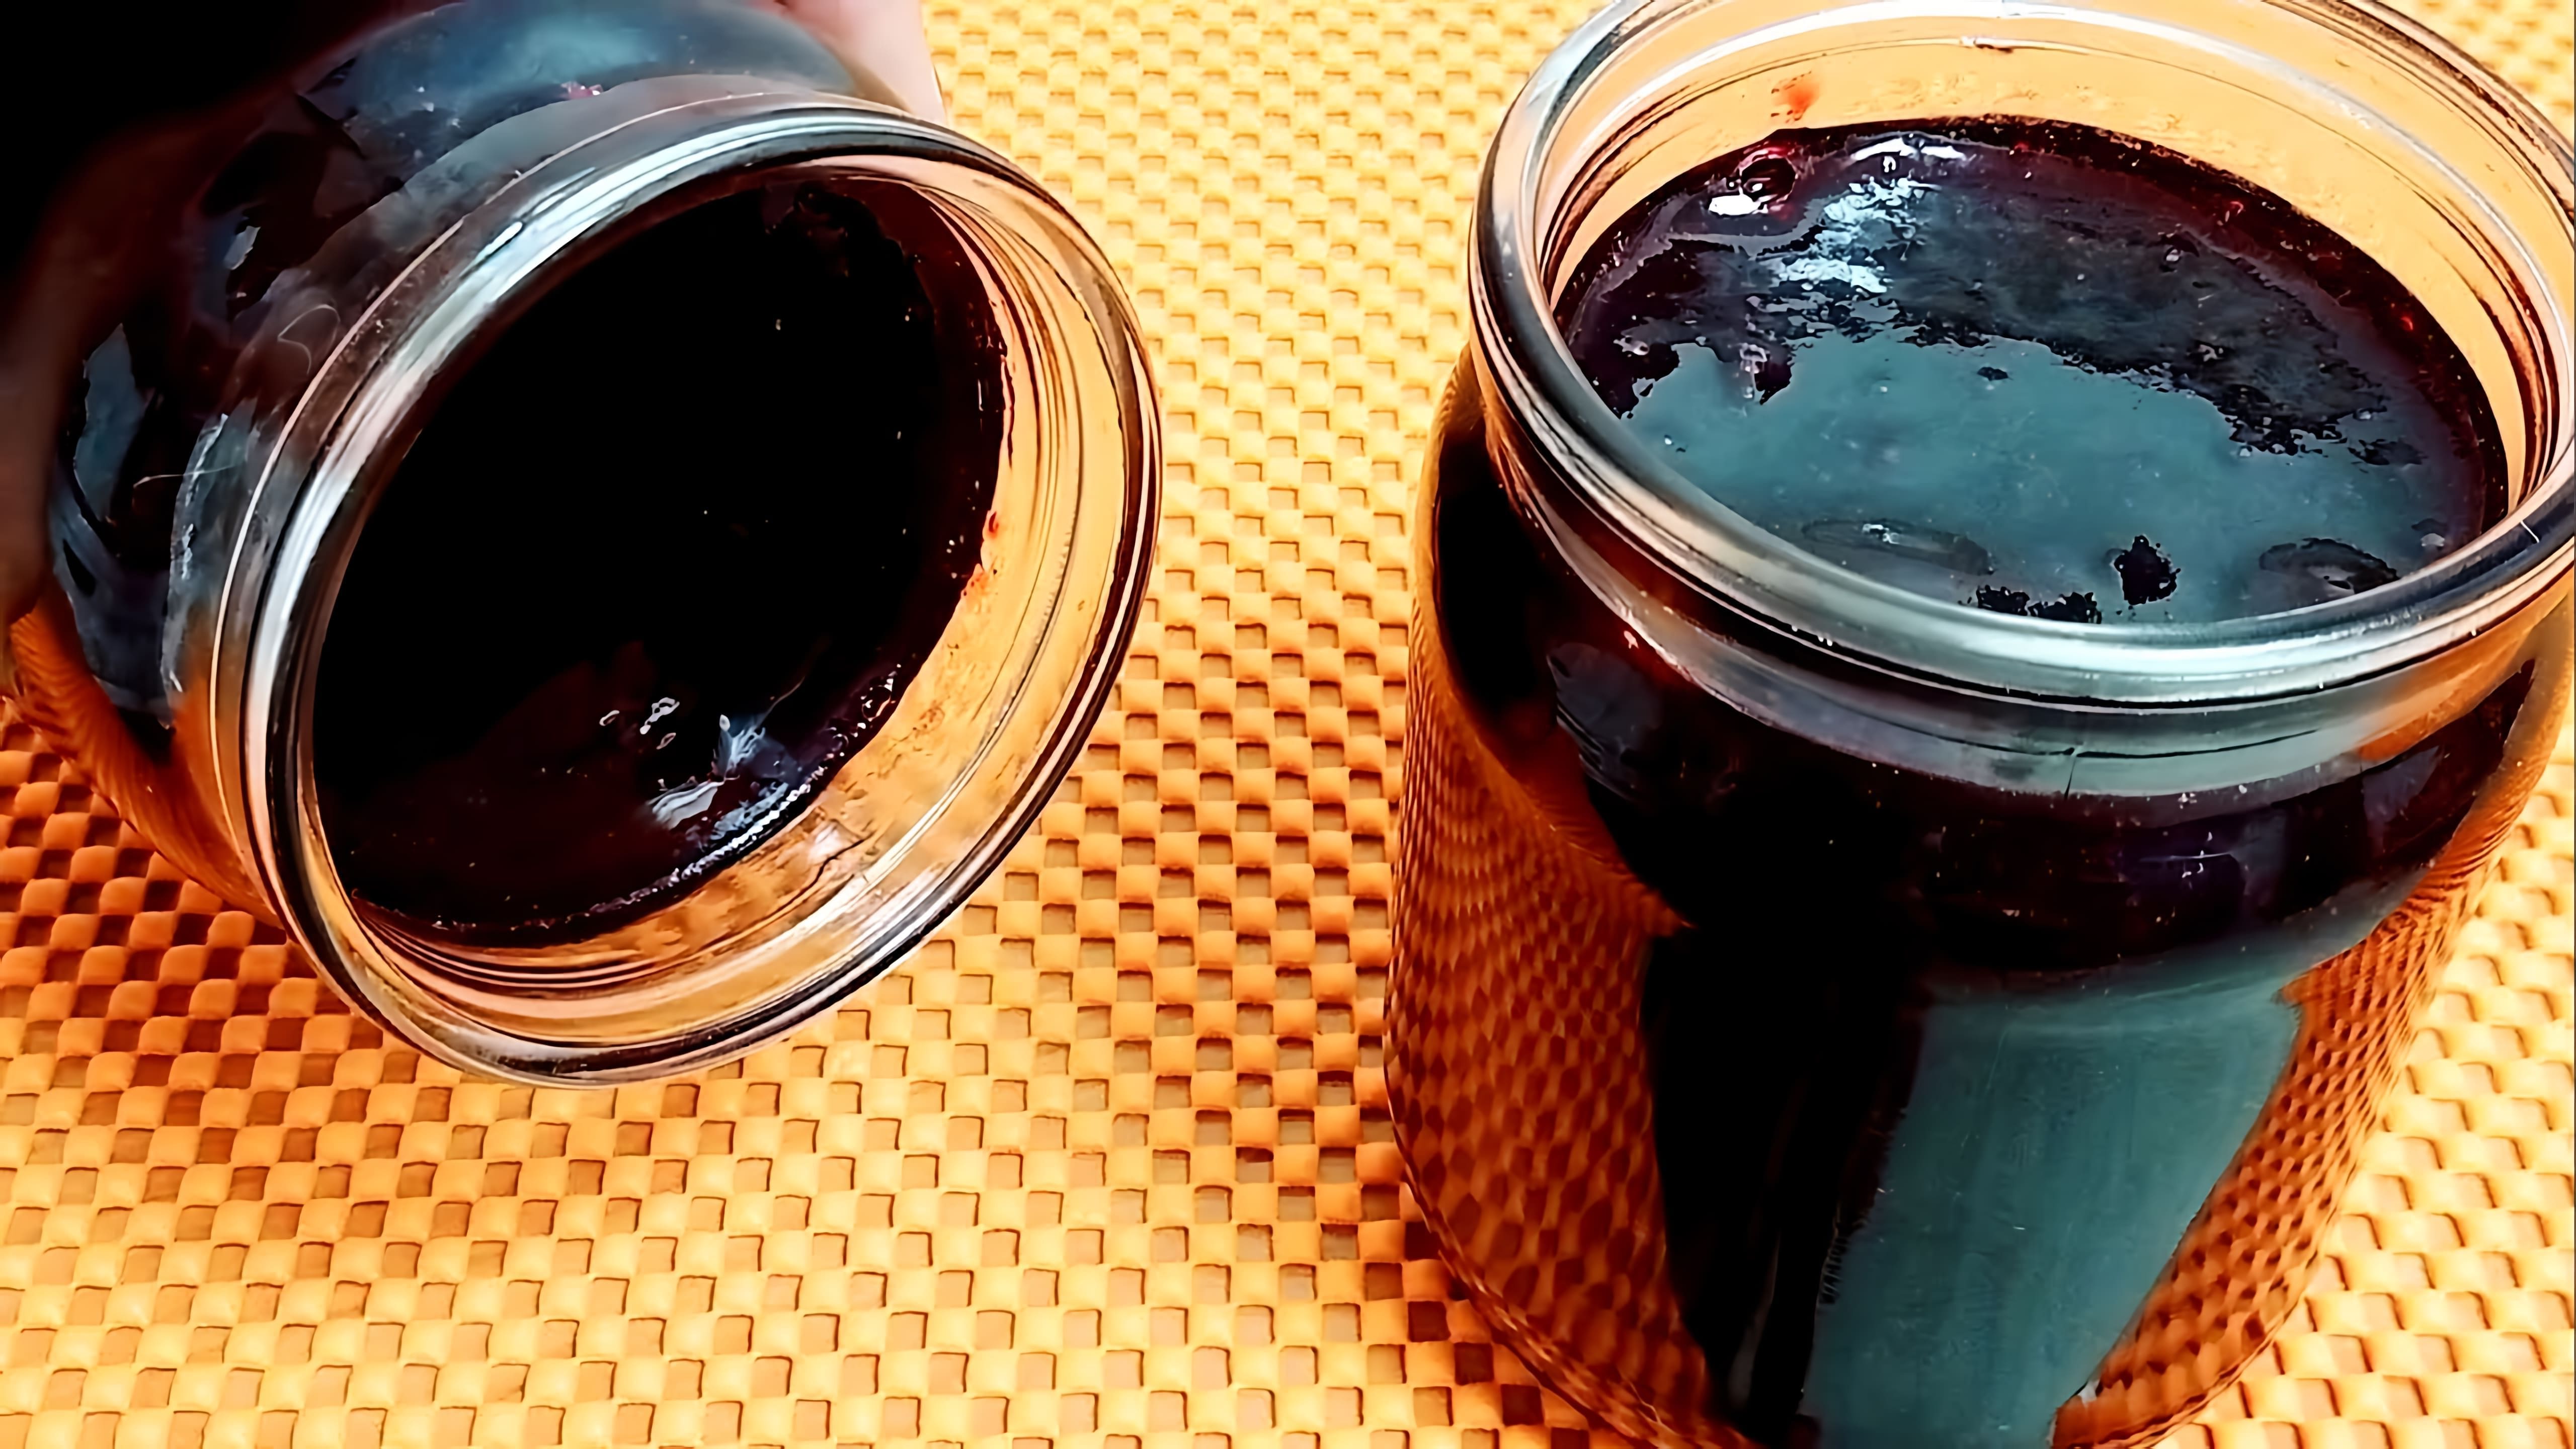 Как быстро и вкусно приготовить желе из чёрной смородины? Ответ вы найдёте в этом видео WMSvw2fLvcI. 